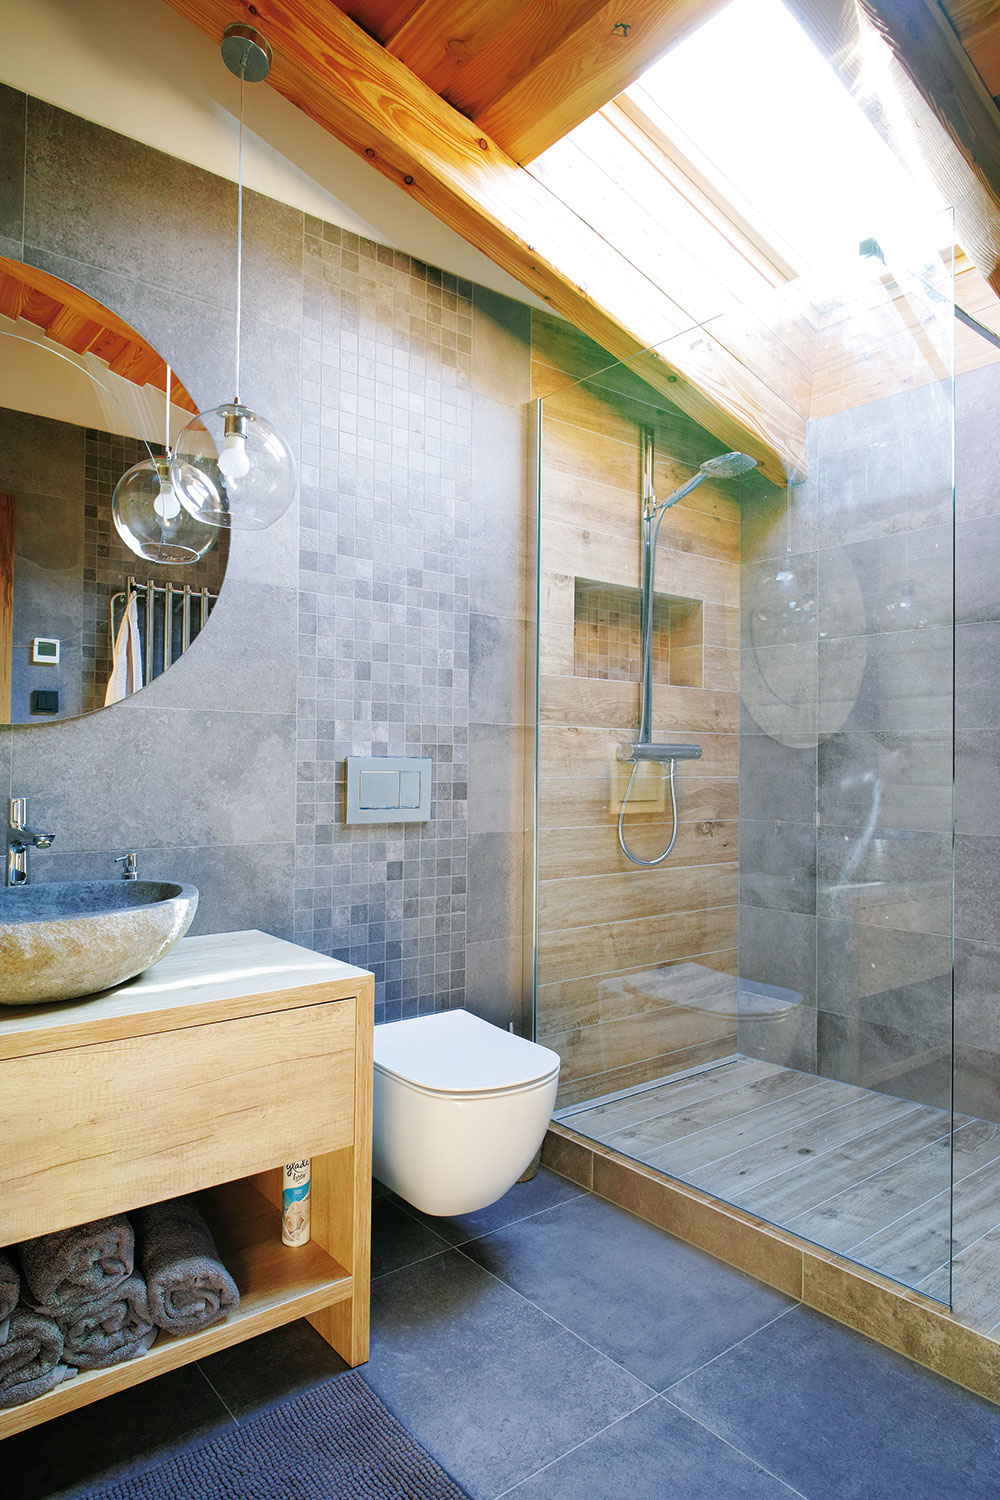 PRÍRODNÝ CHARAKTER bol zachovaný aj v kúpeľniach s obkladom, ktorý imituje kameň a drevo. Priehľadné sklo  v sprchovacom kúte a číre svietidlá pocitovo priestor odľahčujú.